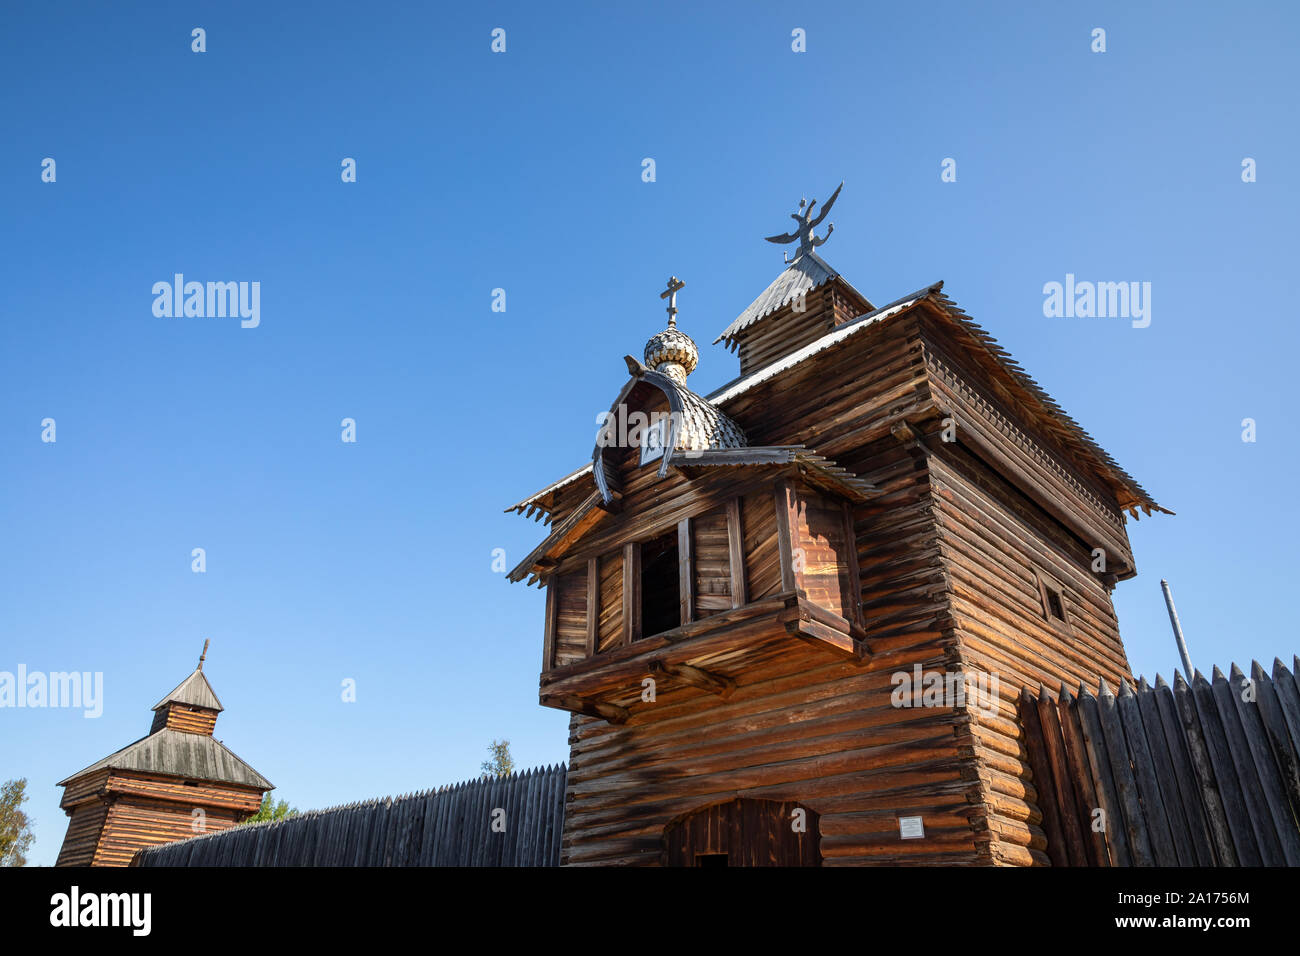 Maison traditionnelle en bois de Sibérie dans le musée de Taltsy Architectural-Ethnographic. Banque D'Images